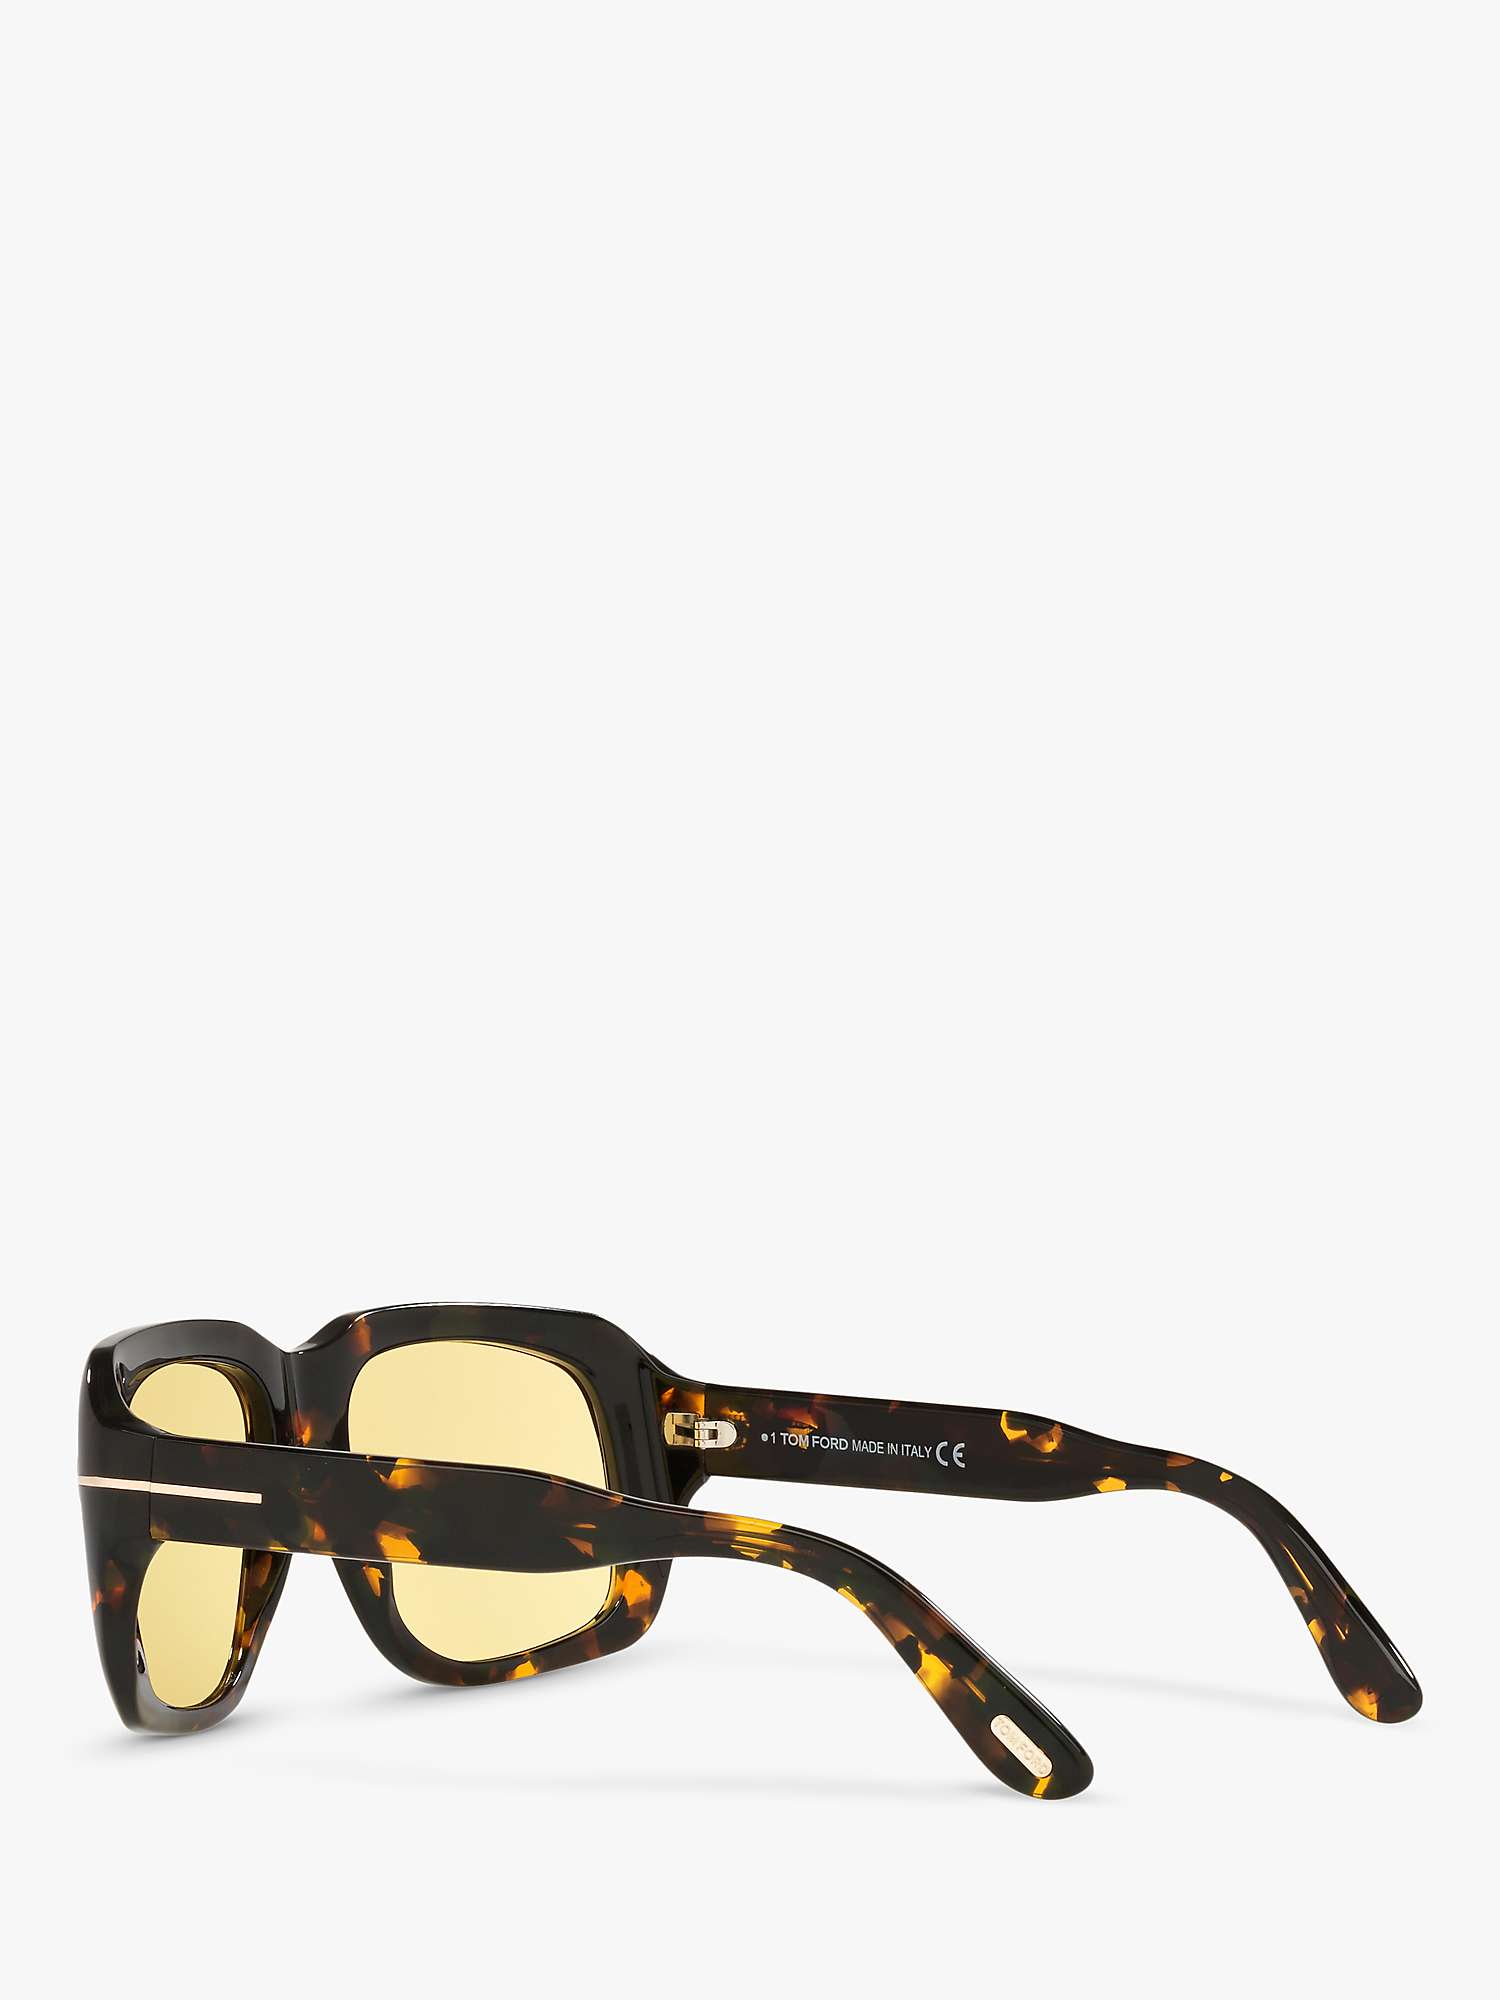 Buy TOM FORD TR001327 Men's Tortoiseshell Sunglasses, Brown Online at johnlewis.com